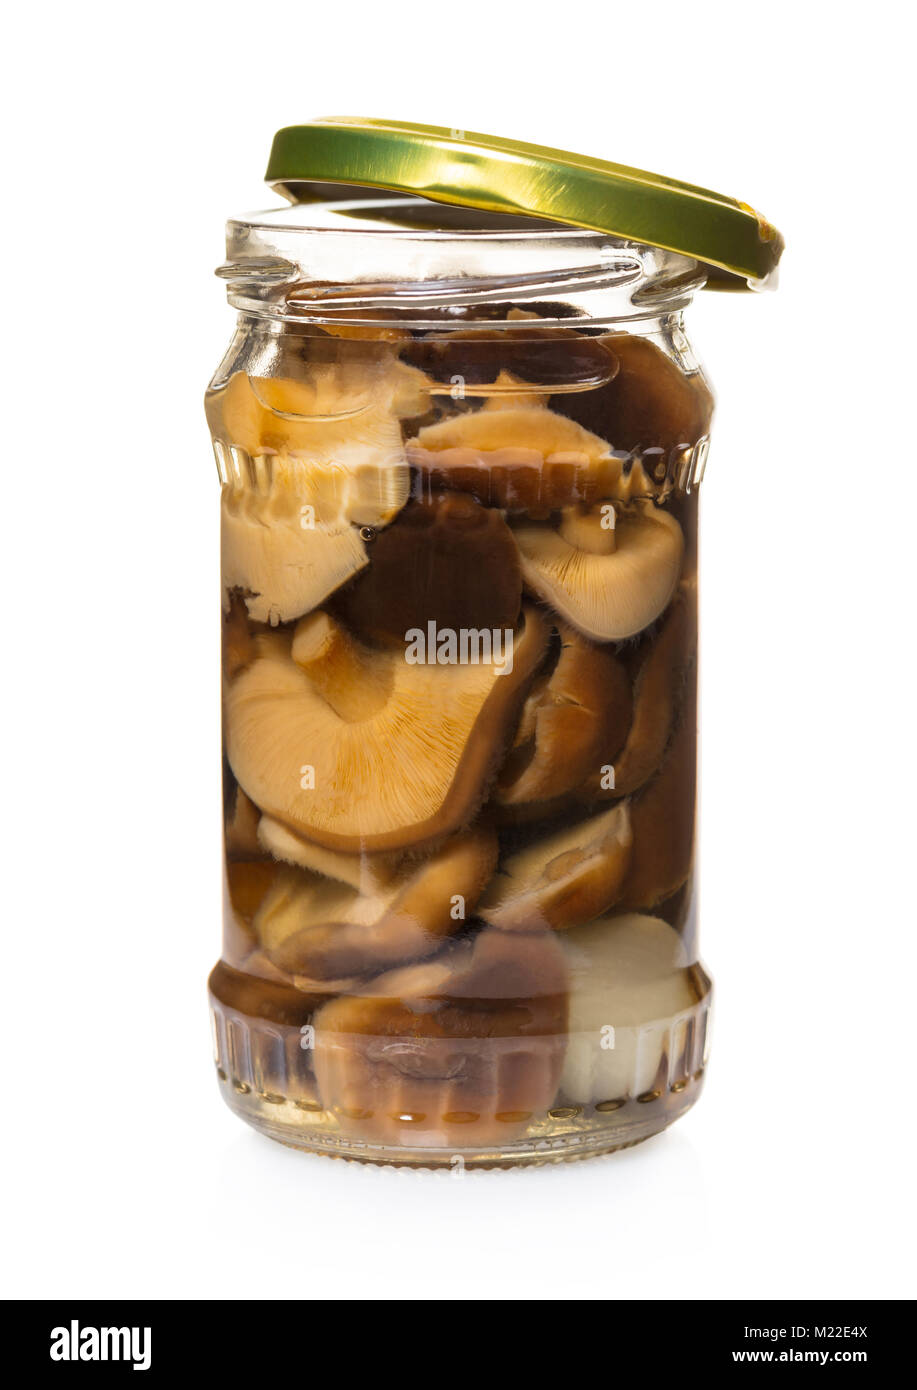 Eingelegte Pilze in einem Glas auf weißem Hintergrund isoliert  Stockfotografie - Alamy